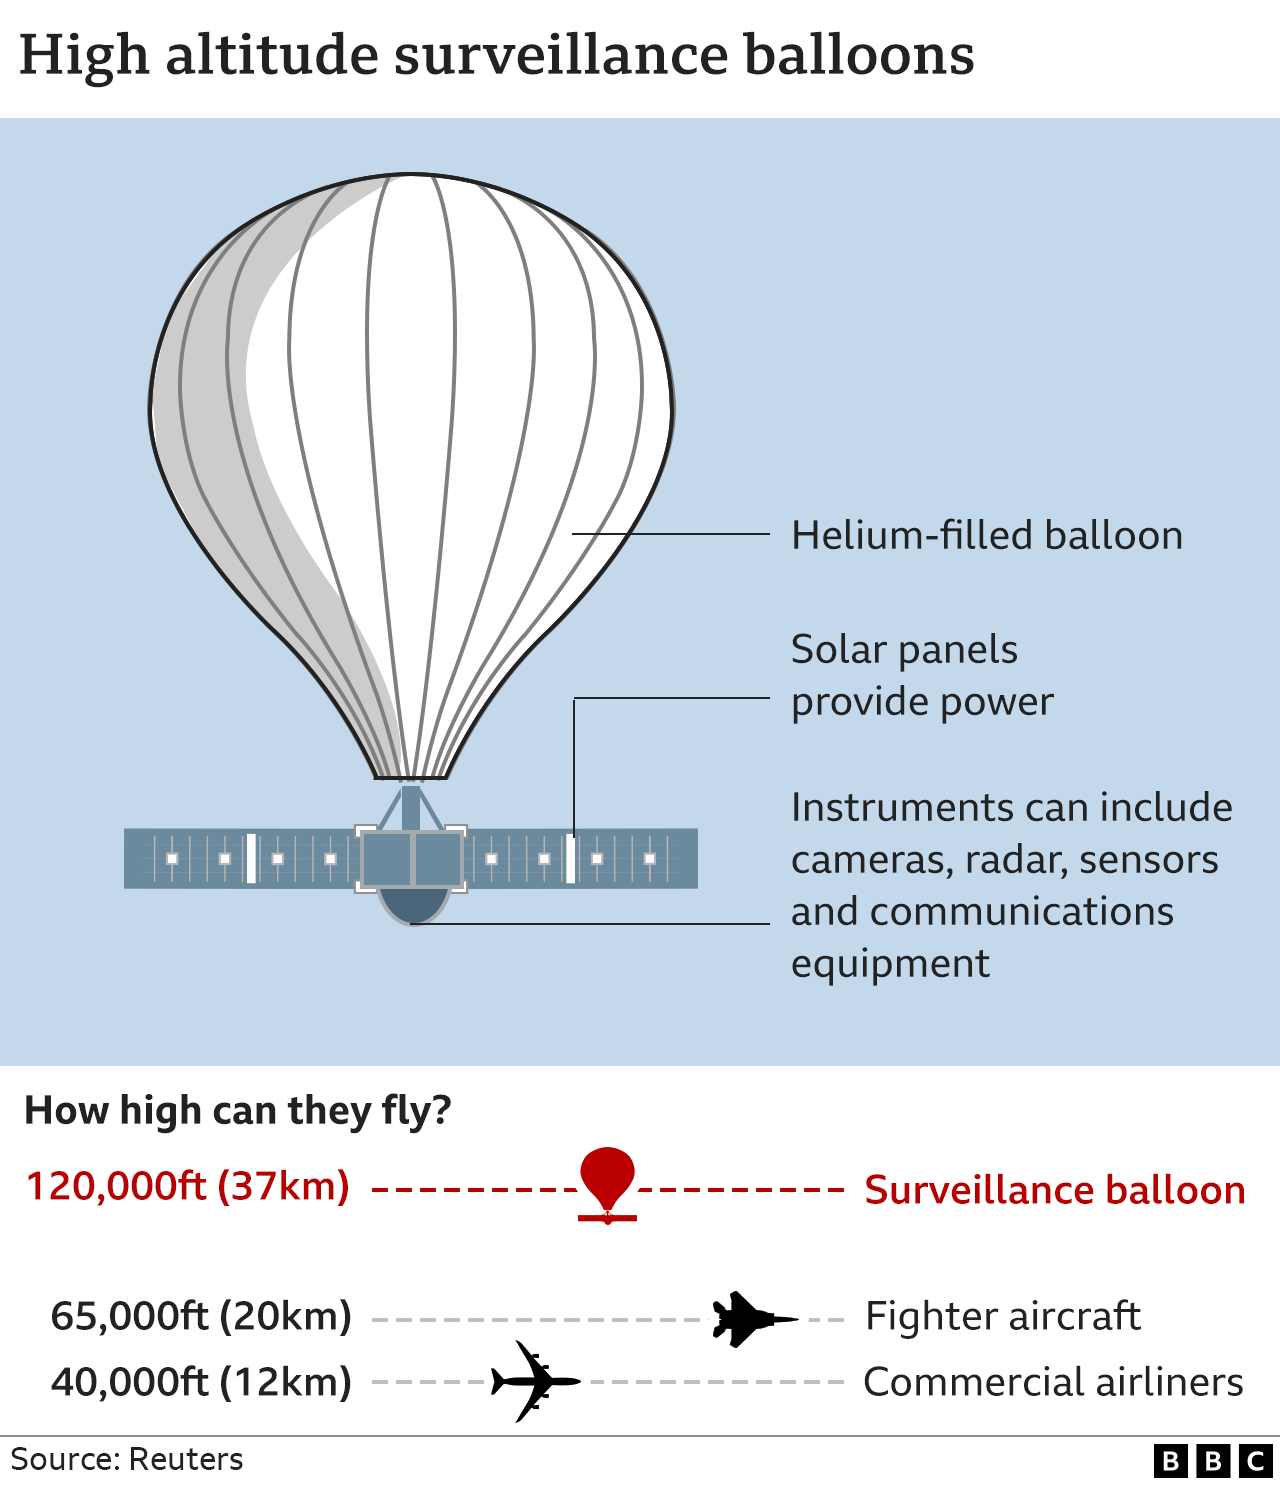 Графика, показывающая высотный воздушный шар и его высоту по сравнению с истребителями и гражданскими самолетами